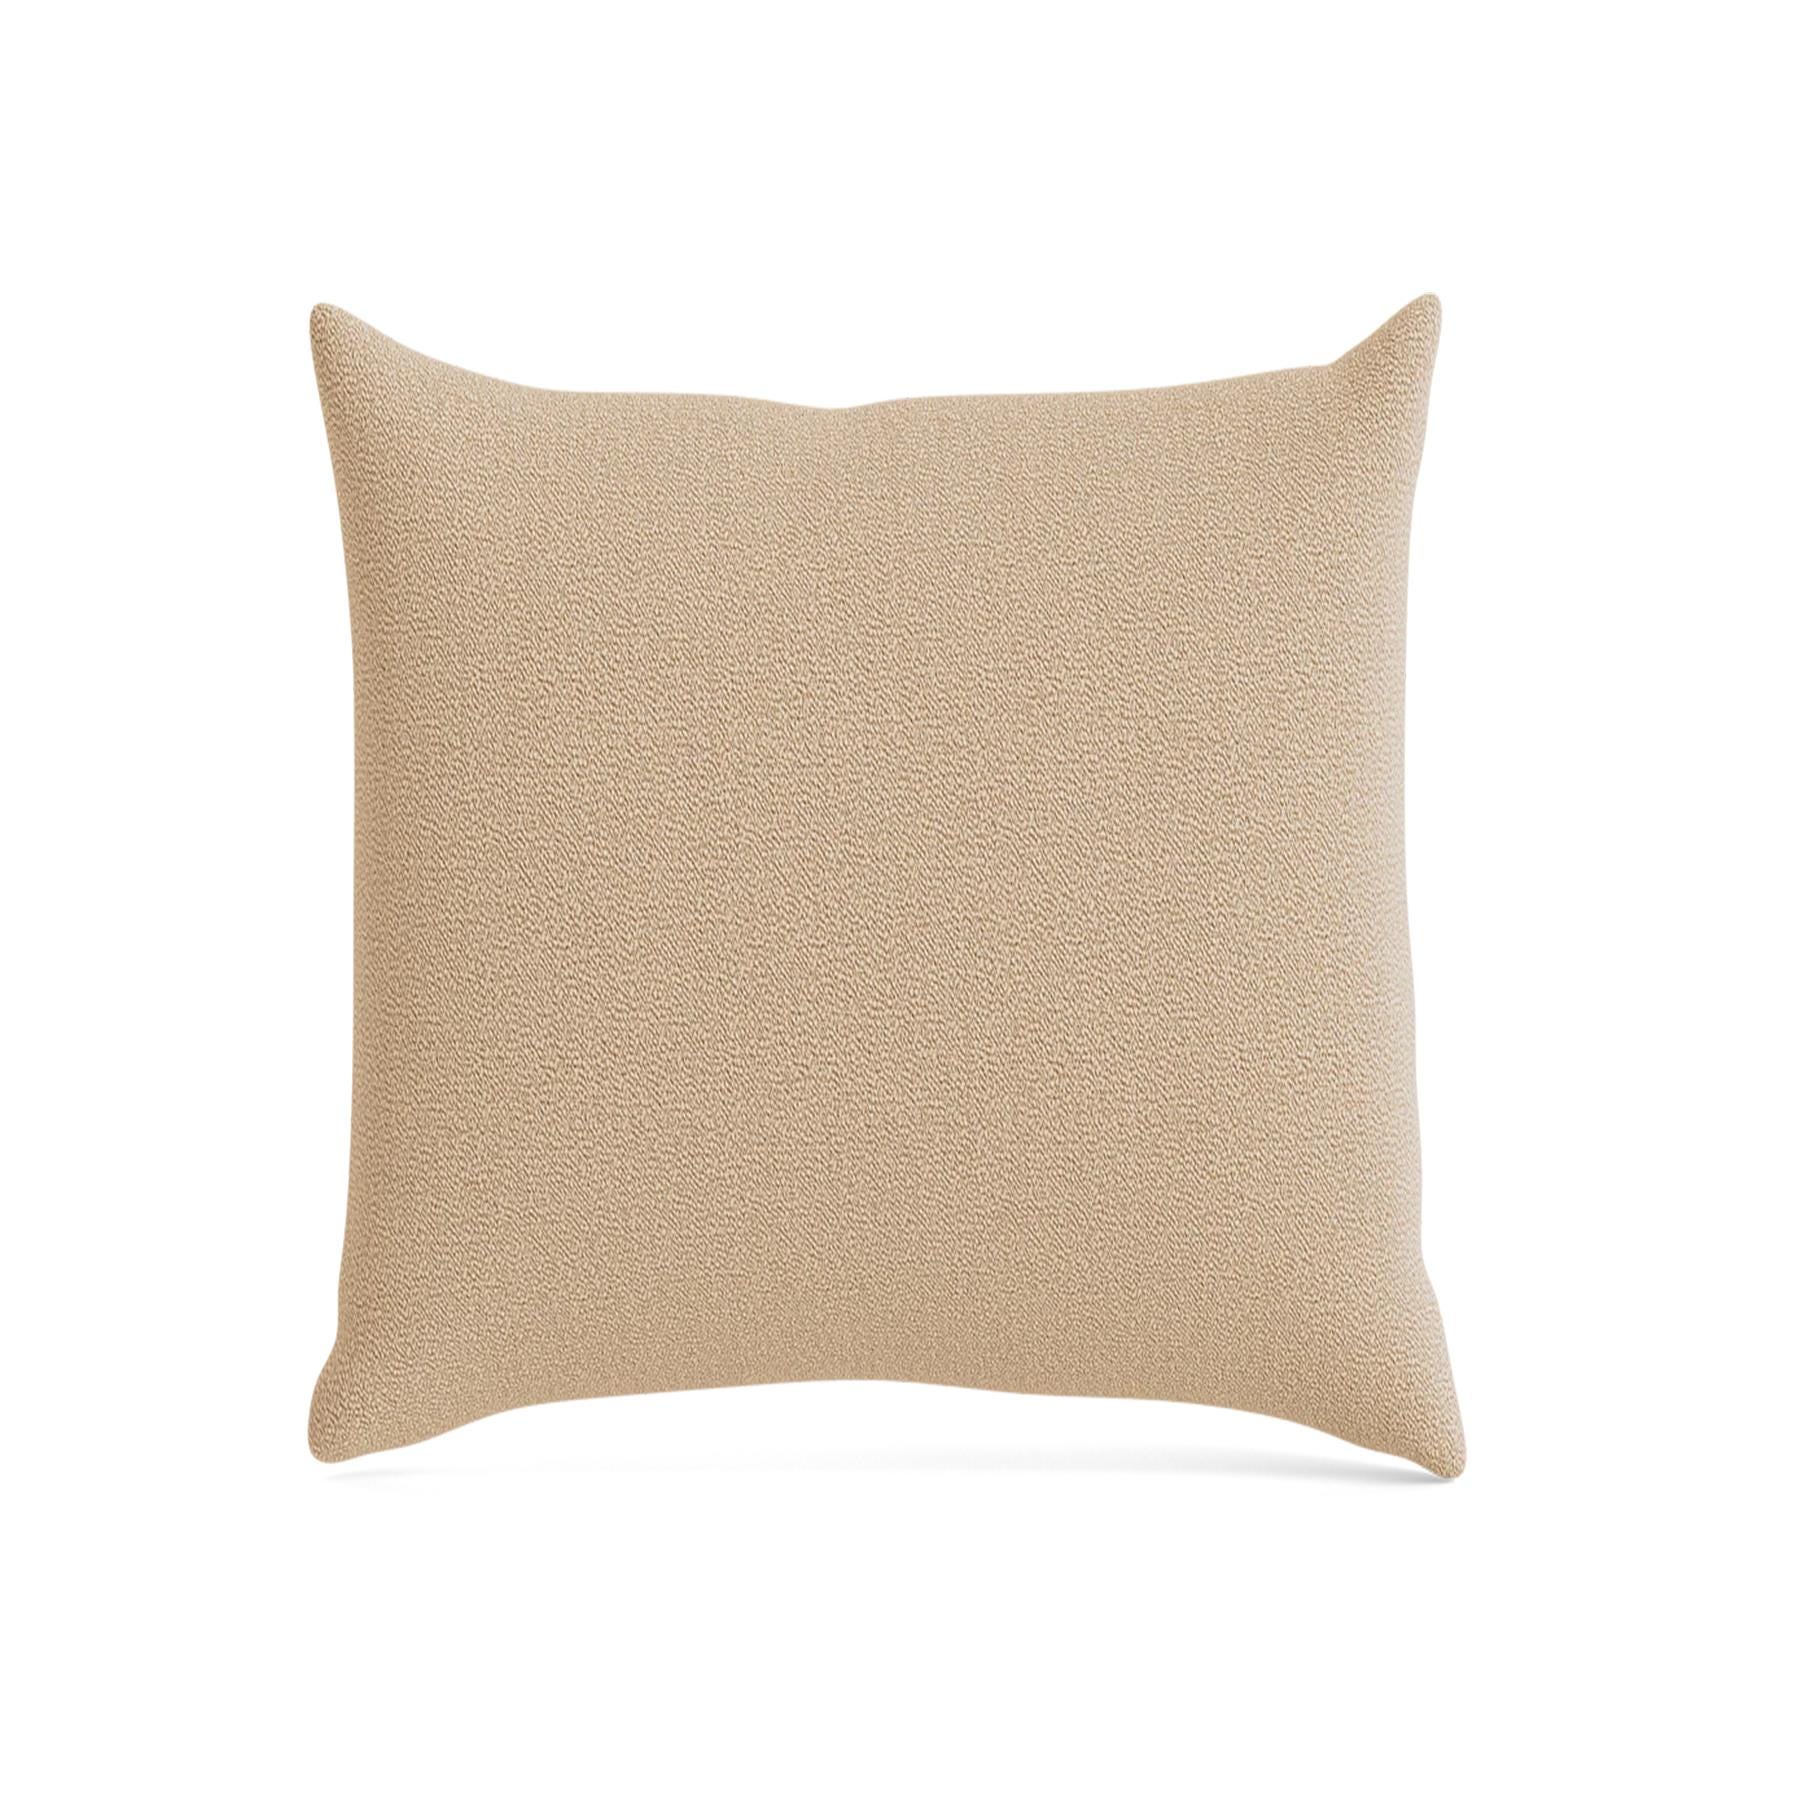 Make Nordic Pillow 50cmx50cm Vidar 323 Down And Fibers Brown